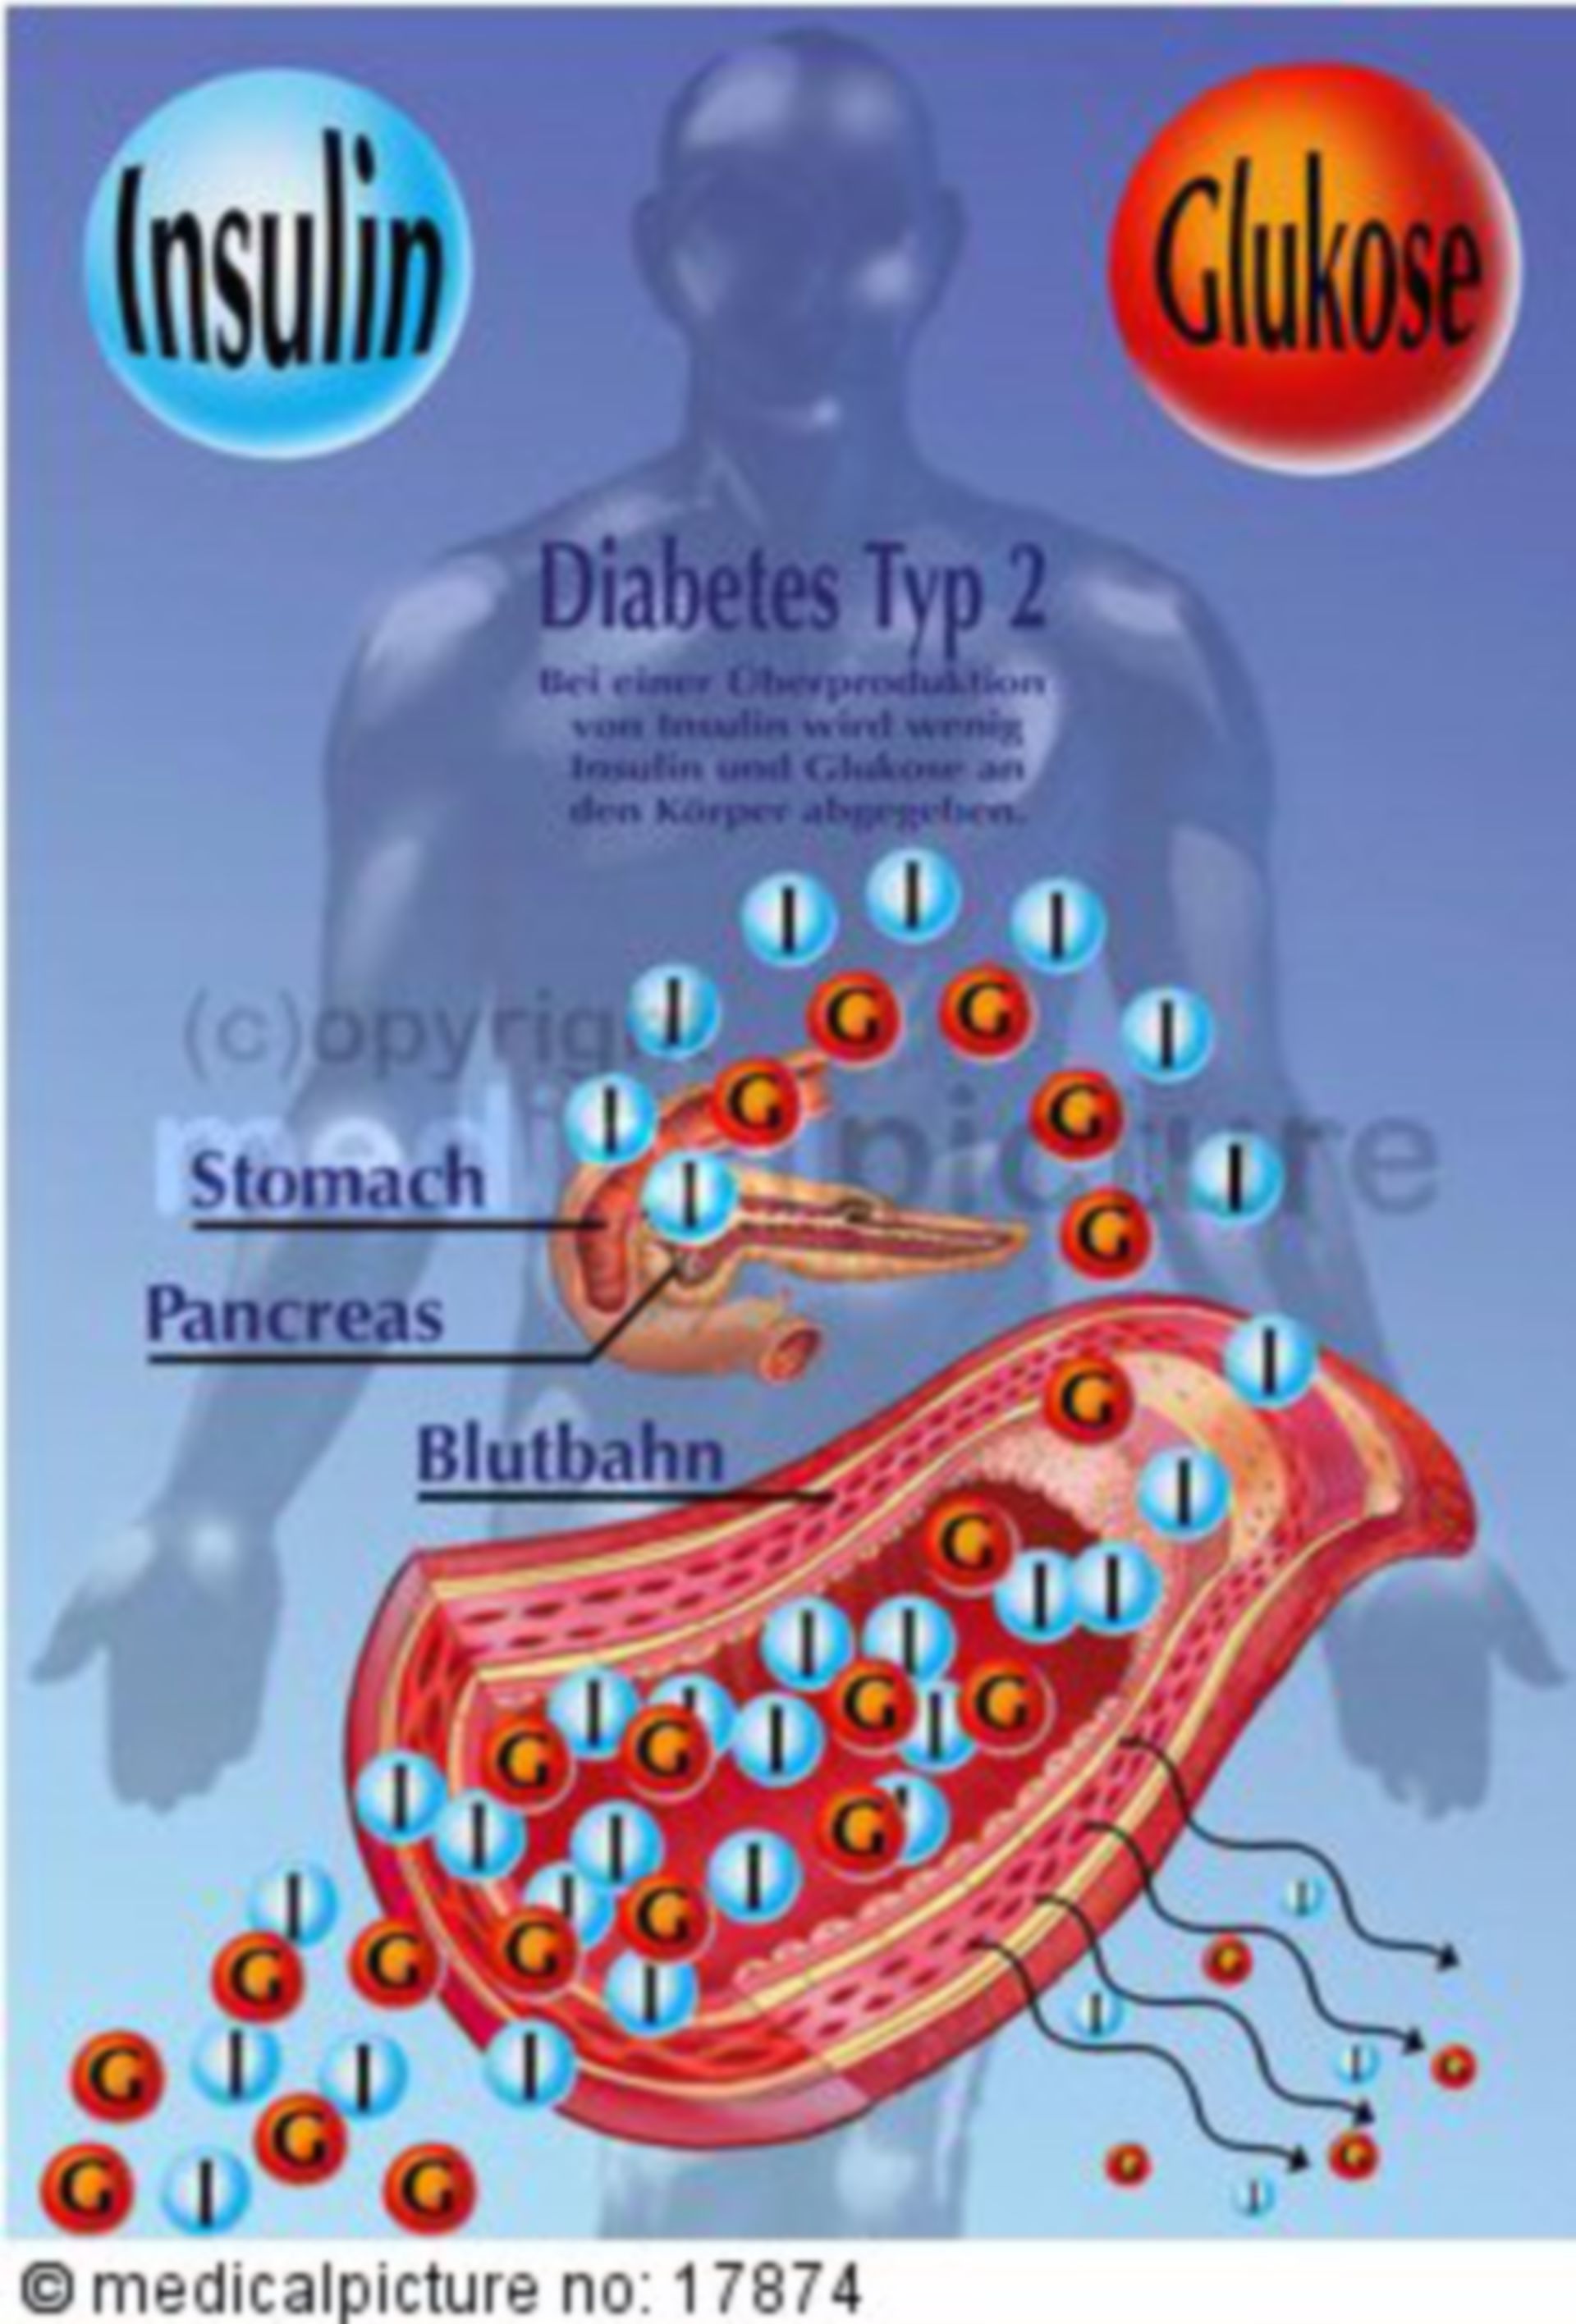 Insulinsekretion bei Menschen mit Typ-2-Diabetes